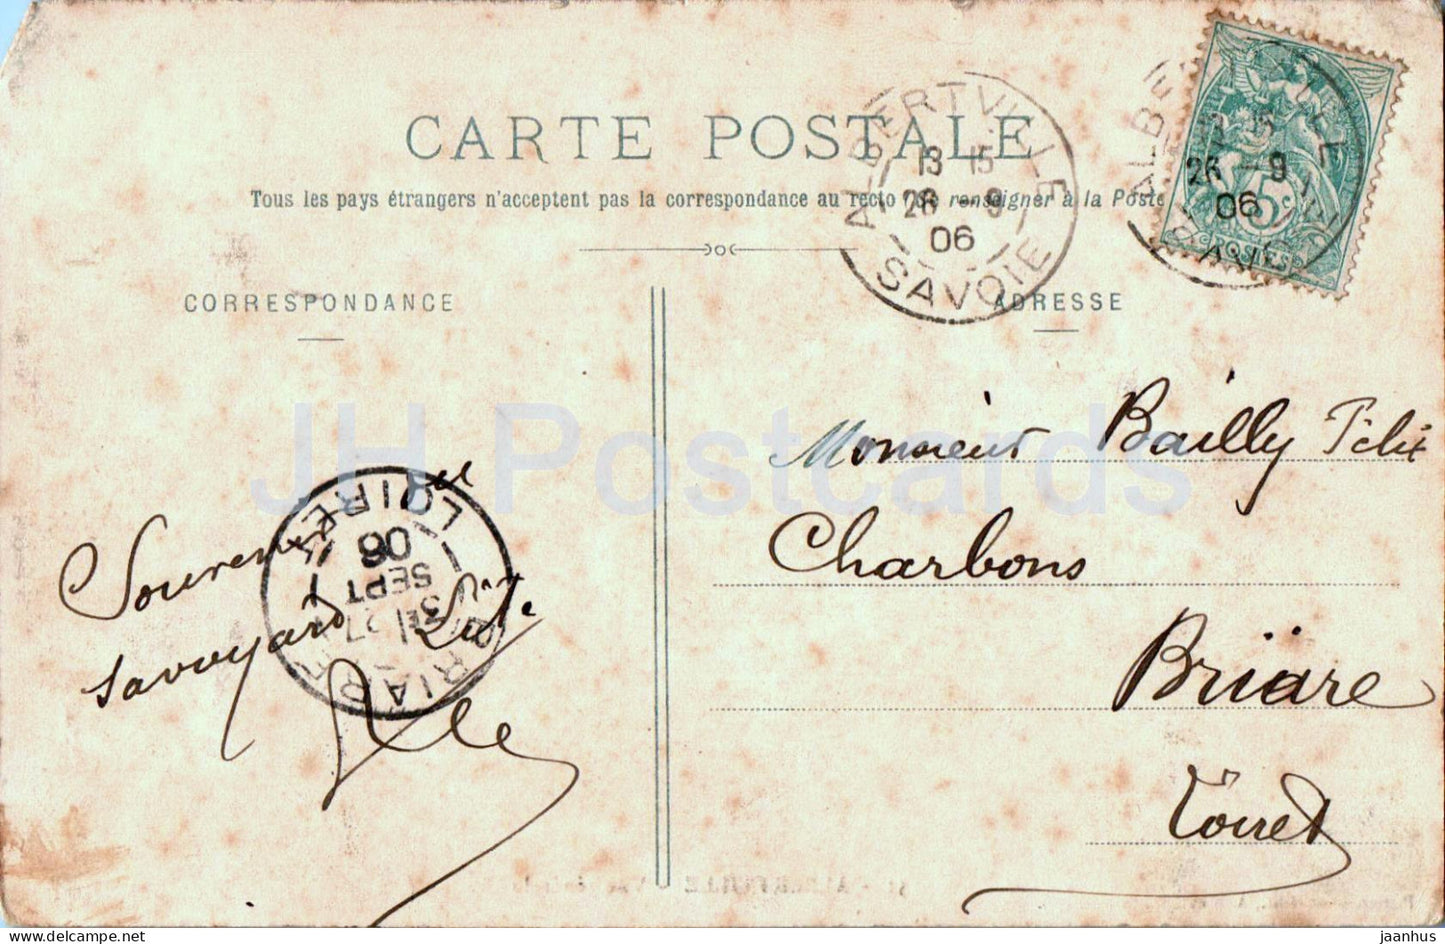 Albertville - Vue generale - 51 - alte Postkarte - 1906 - Frankreich - gebraucht 